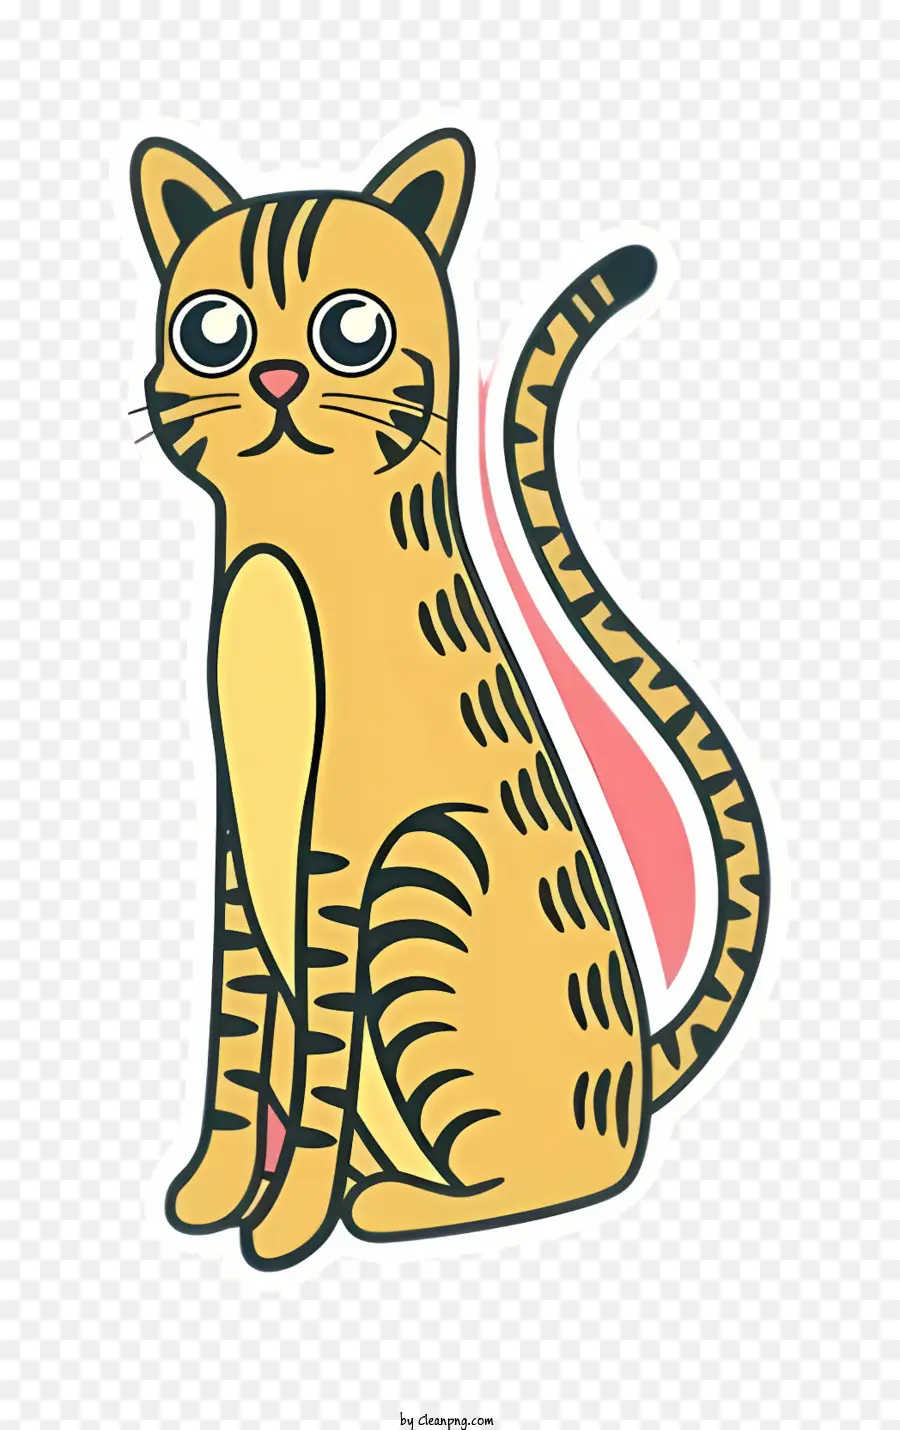 phim hoạt hình mèo - Phim hoạt hình vui tươi mèo con mèo với lông cam